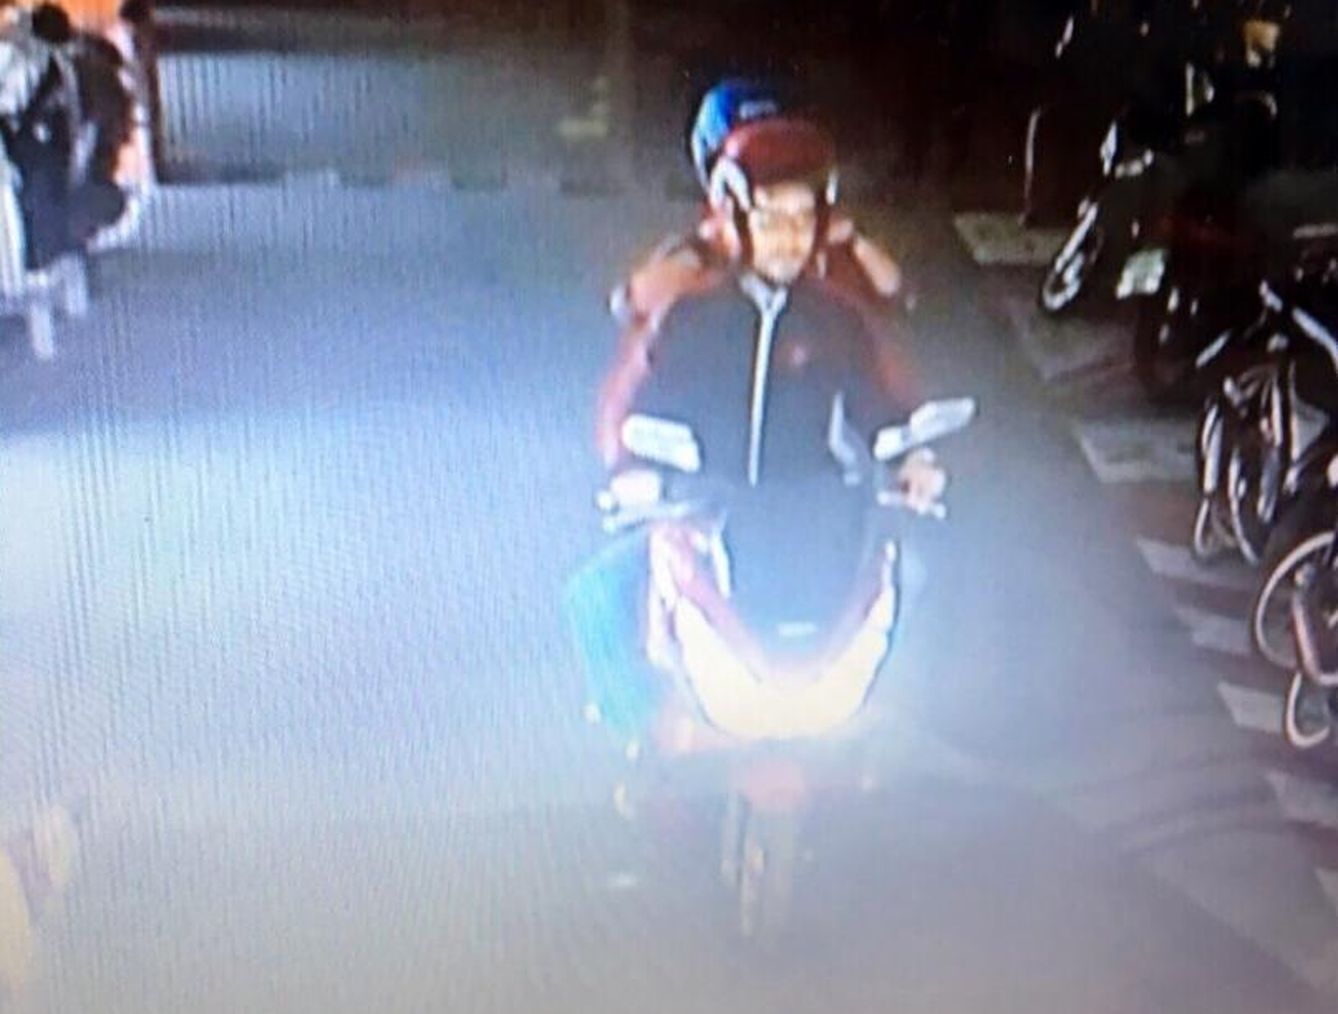 El sospechoso Artur Segarra yendo en moto con su novia a retirar dinero en un cajero automático en Ayuthaya, en una imagen difundida por la policía tailandesa